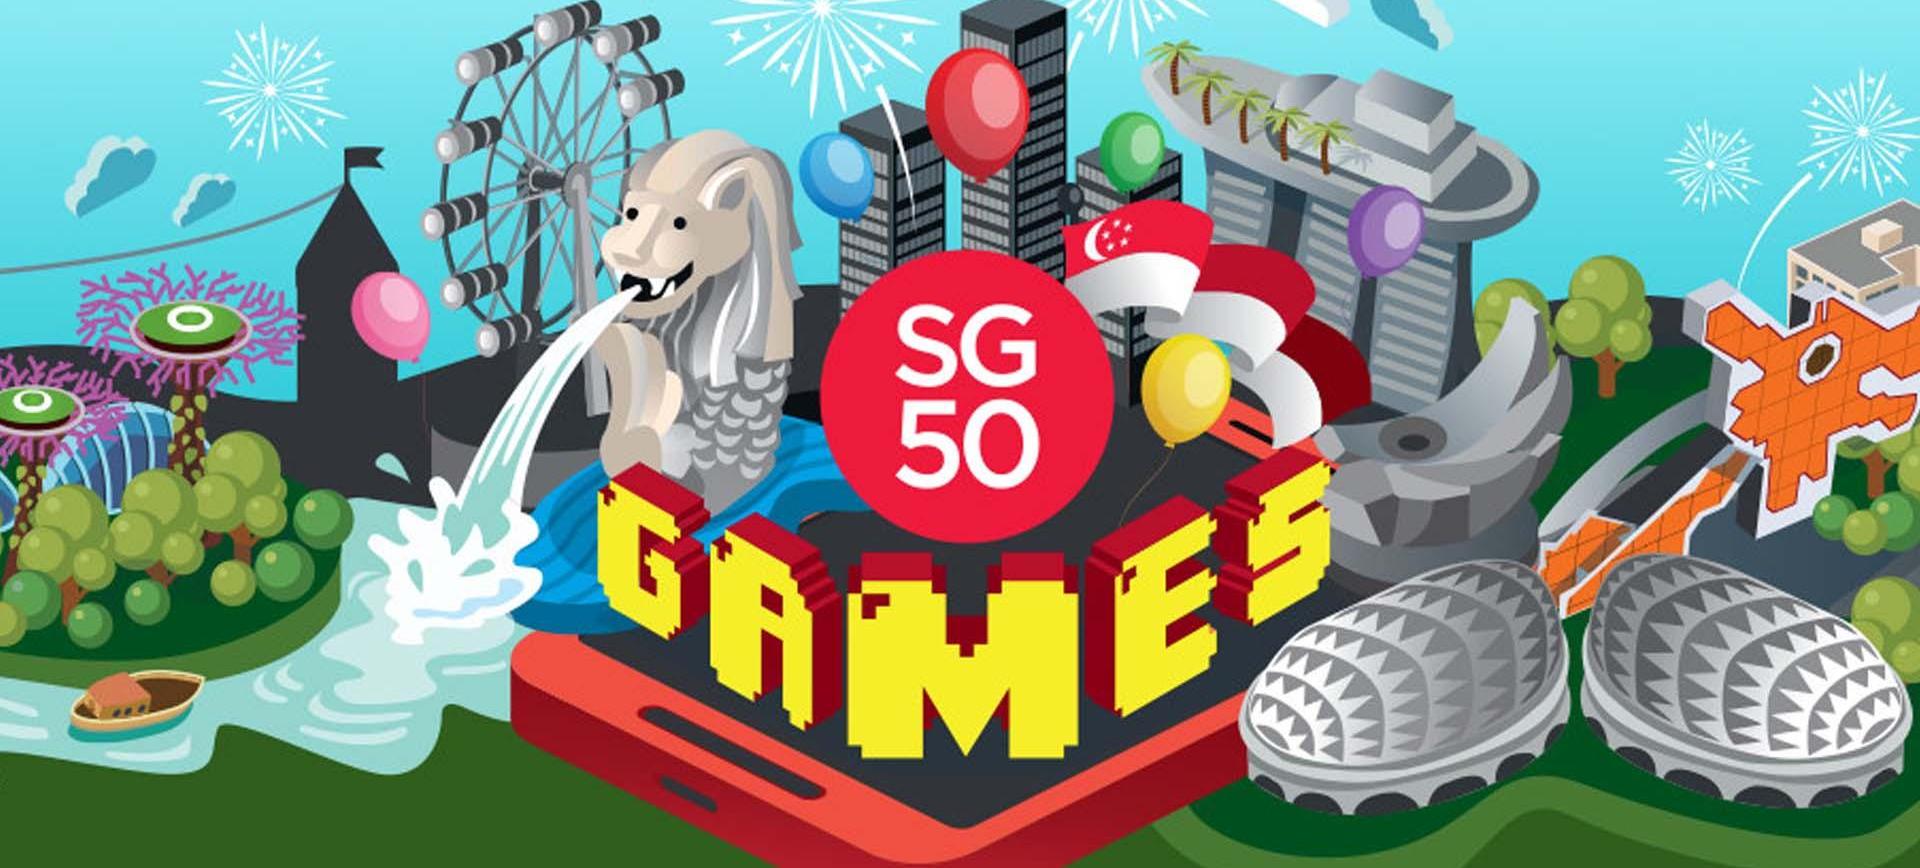 GameStart 2015: SG50 Games - Đại thống lĩnh của đội quân "tí hon"